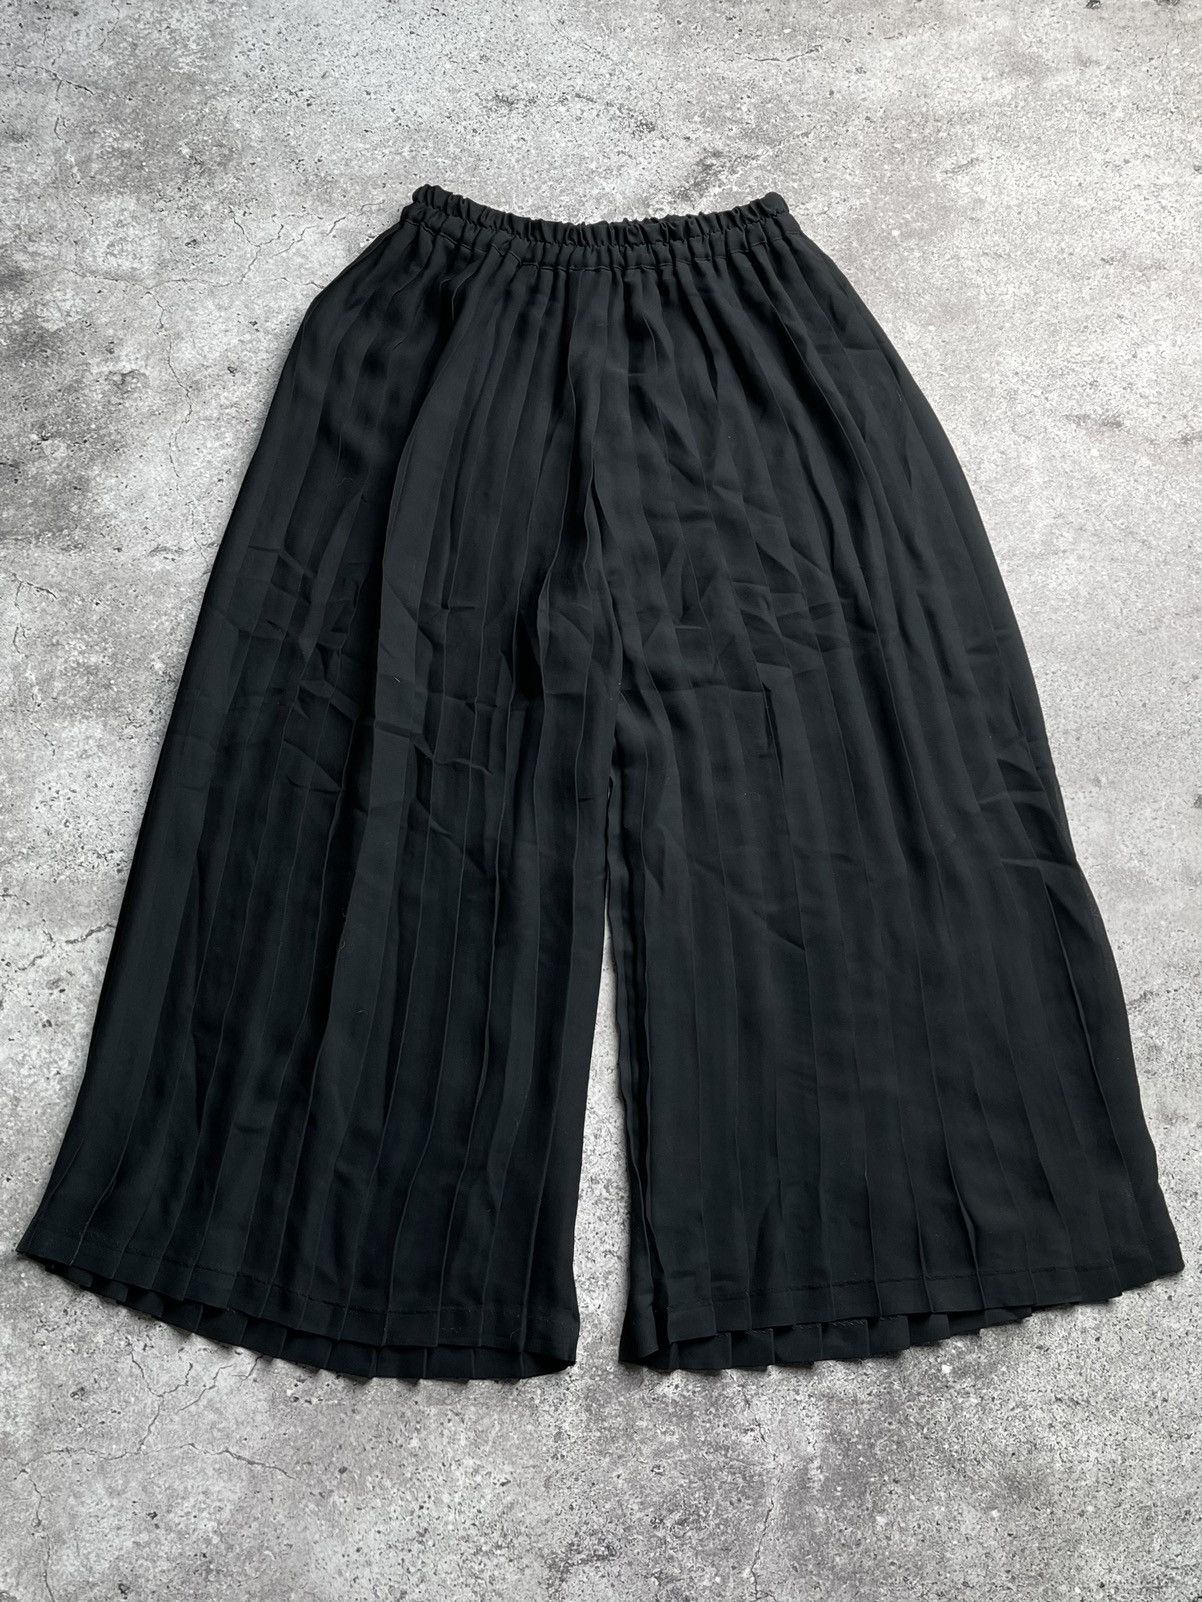 Yohji Yamamoto Vintage Parachute Pants Yohji Style | Grailed